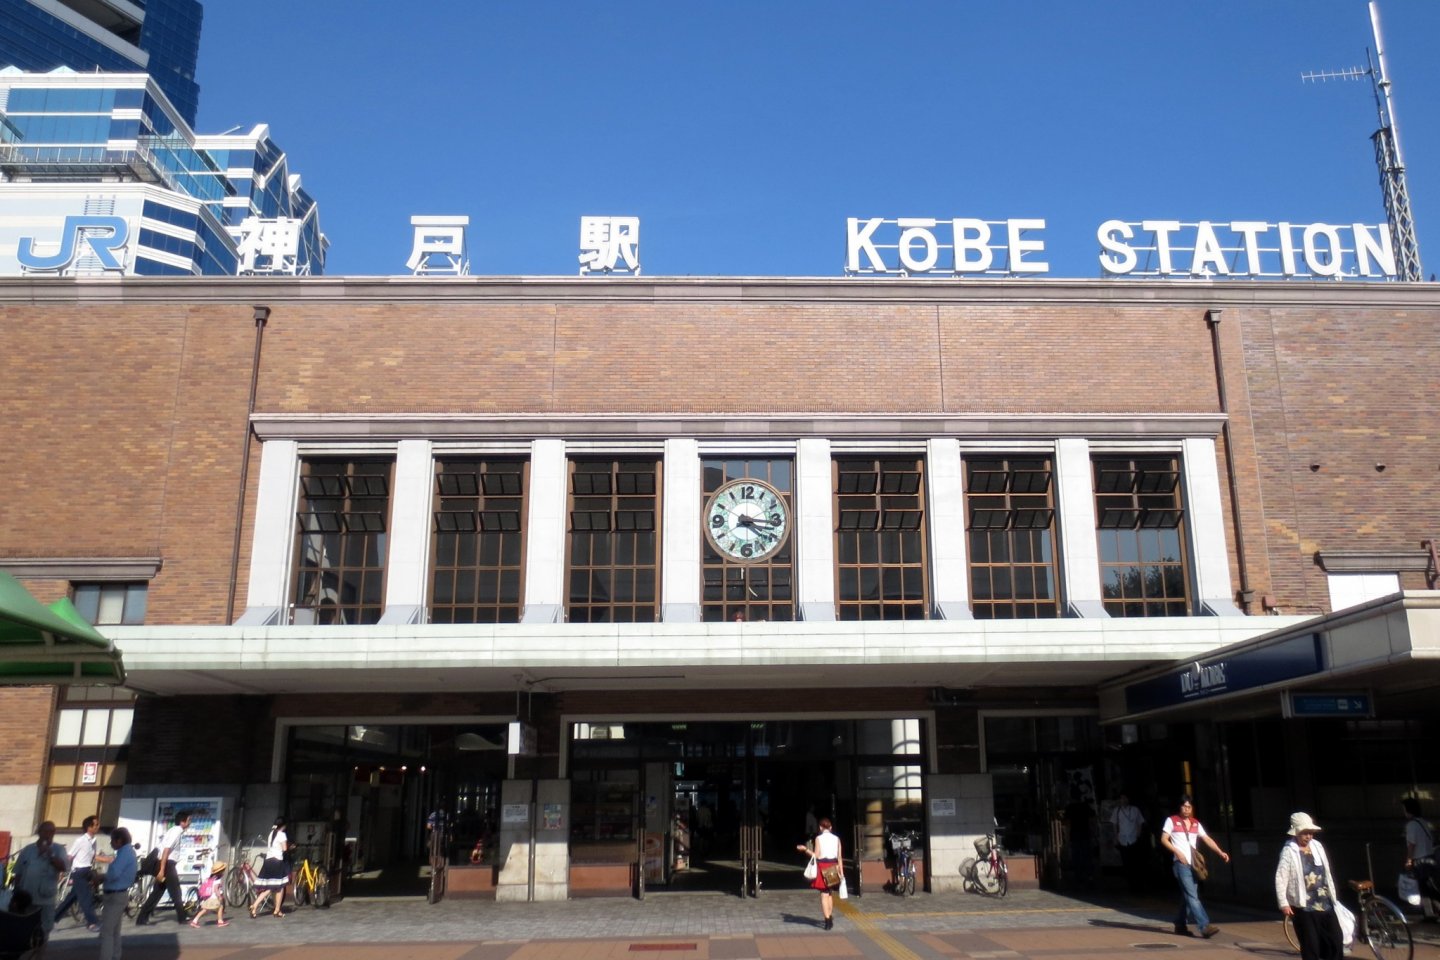 ทางเข้าฝั่งเหนือของสถานีโกเบ